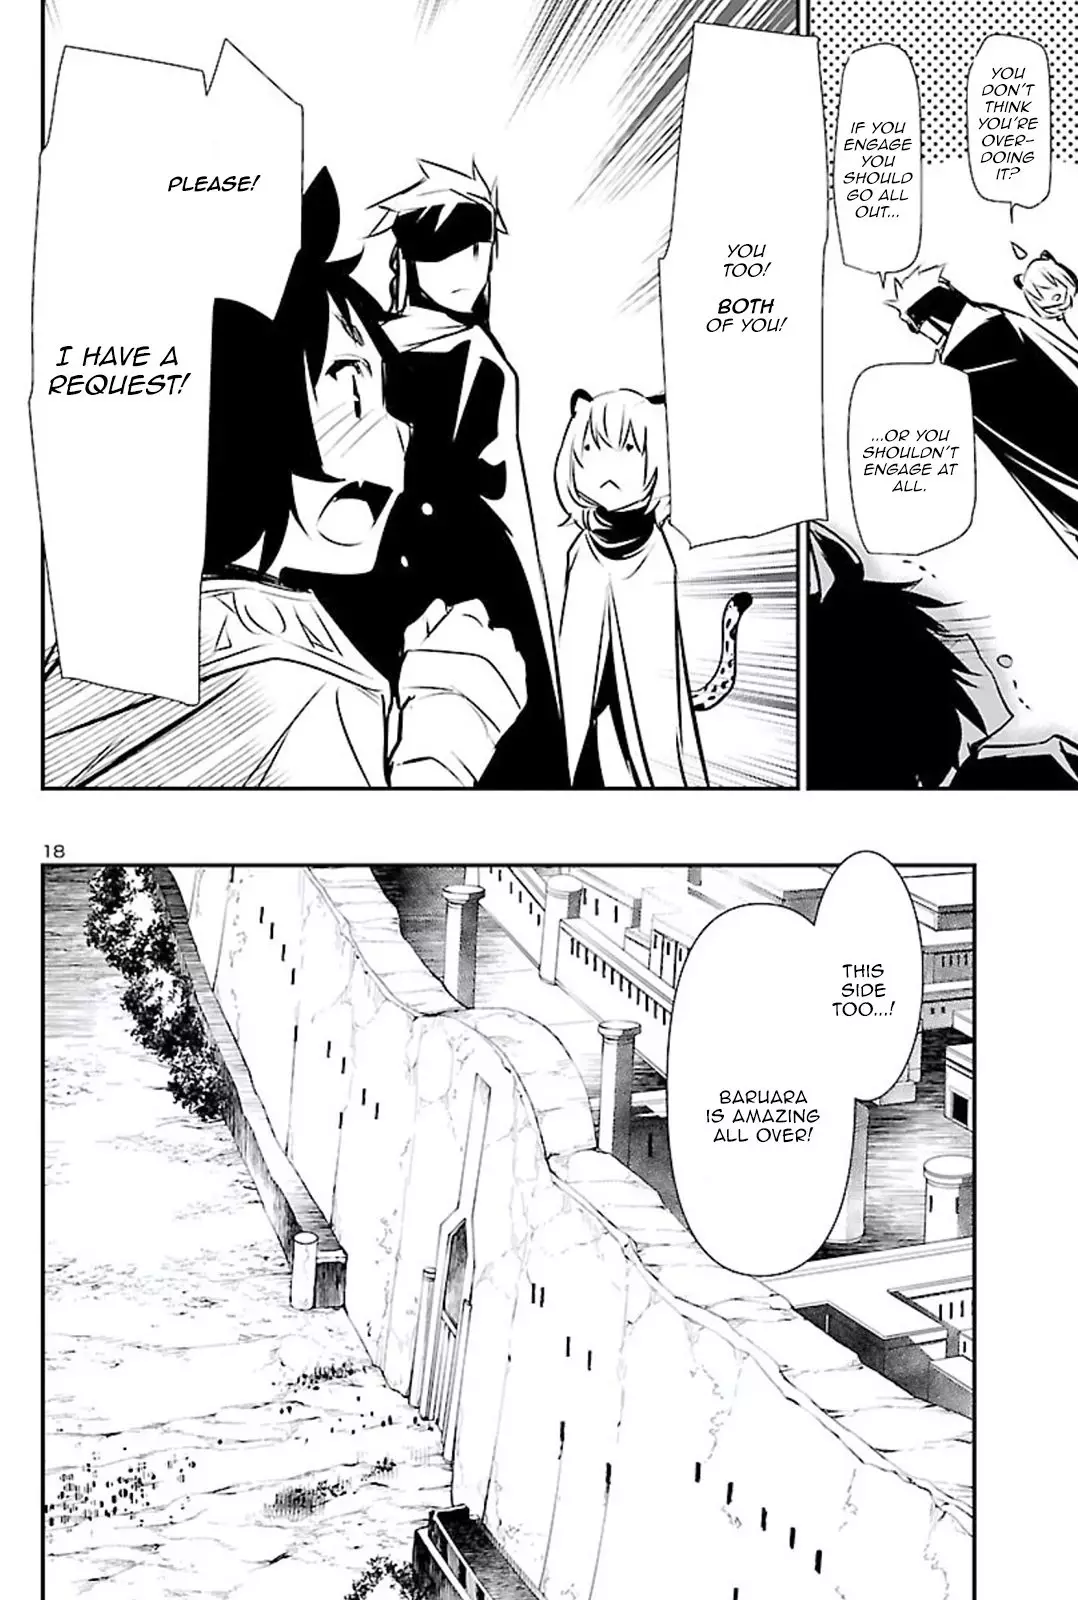 Shinju no Nectar - 49 page 18